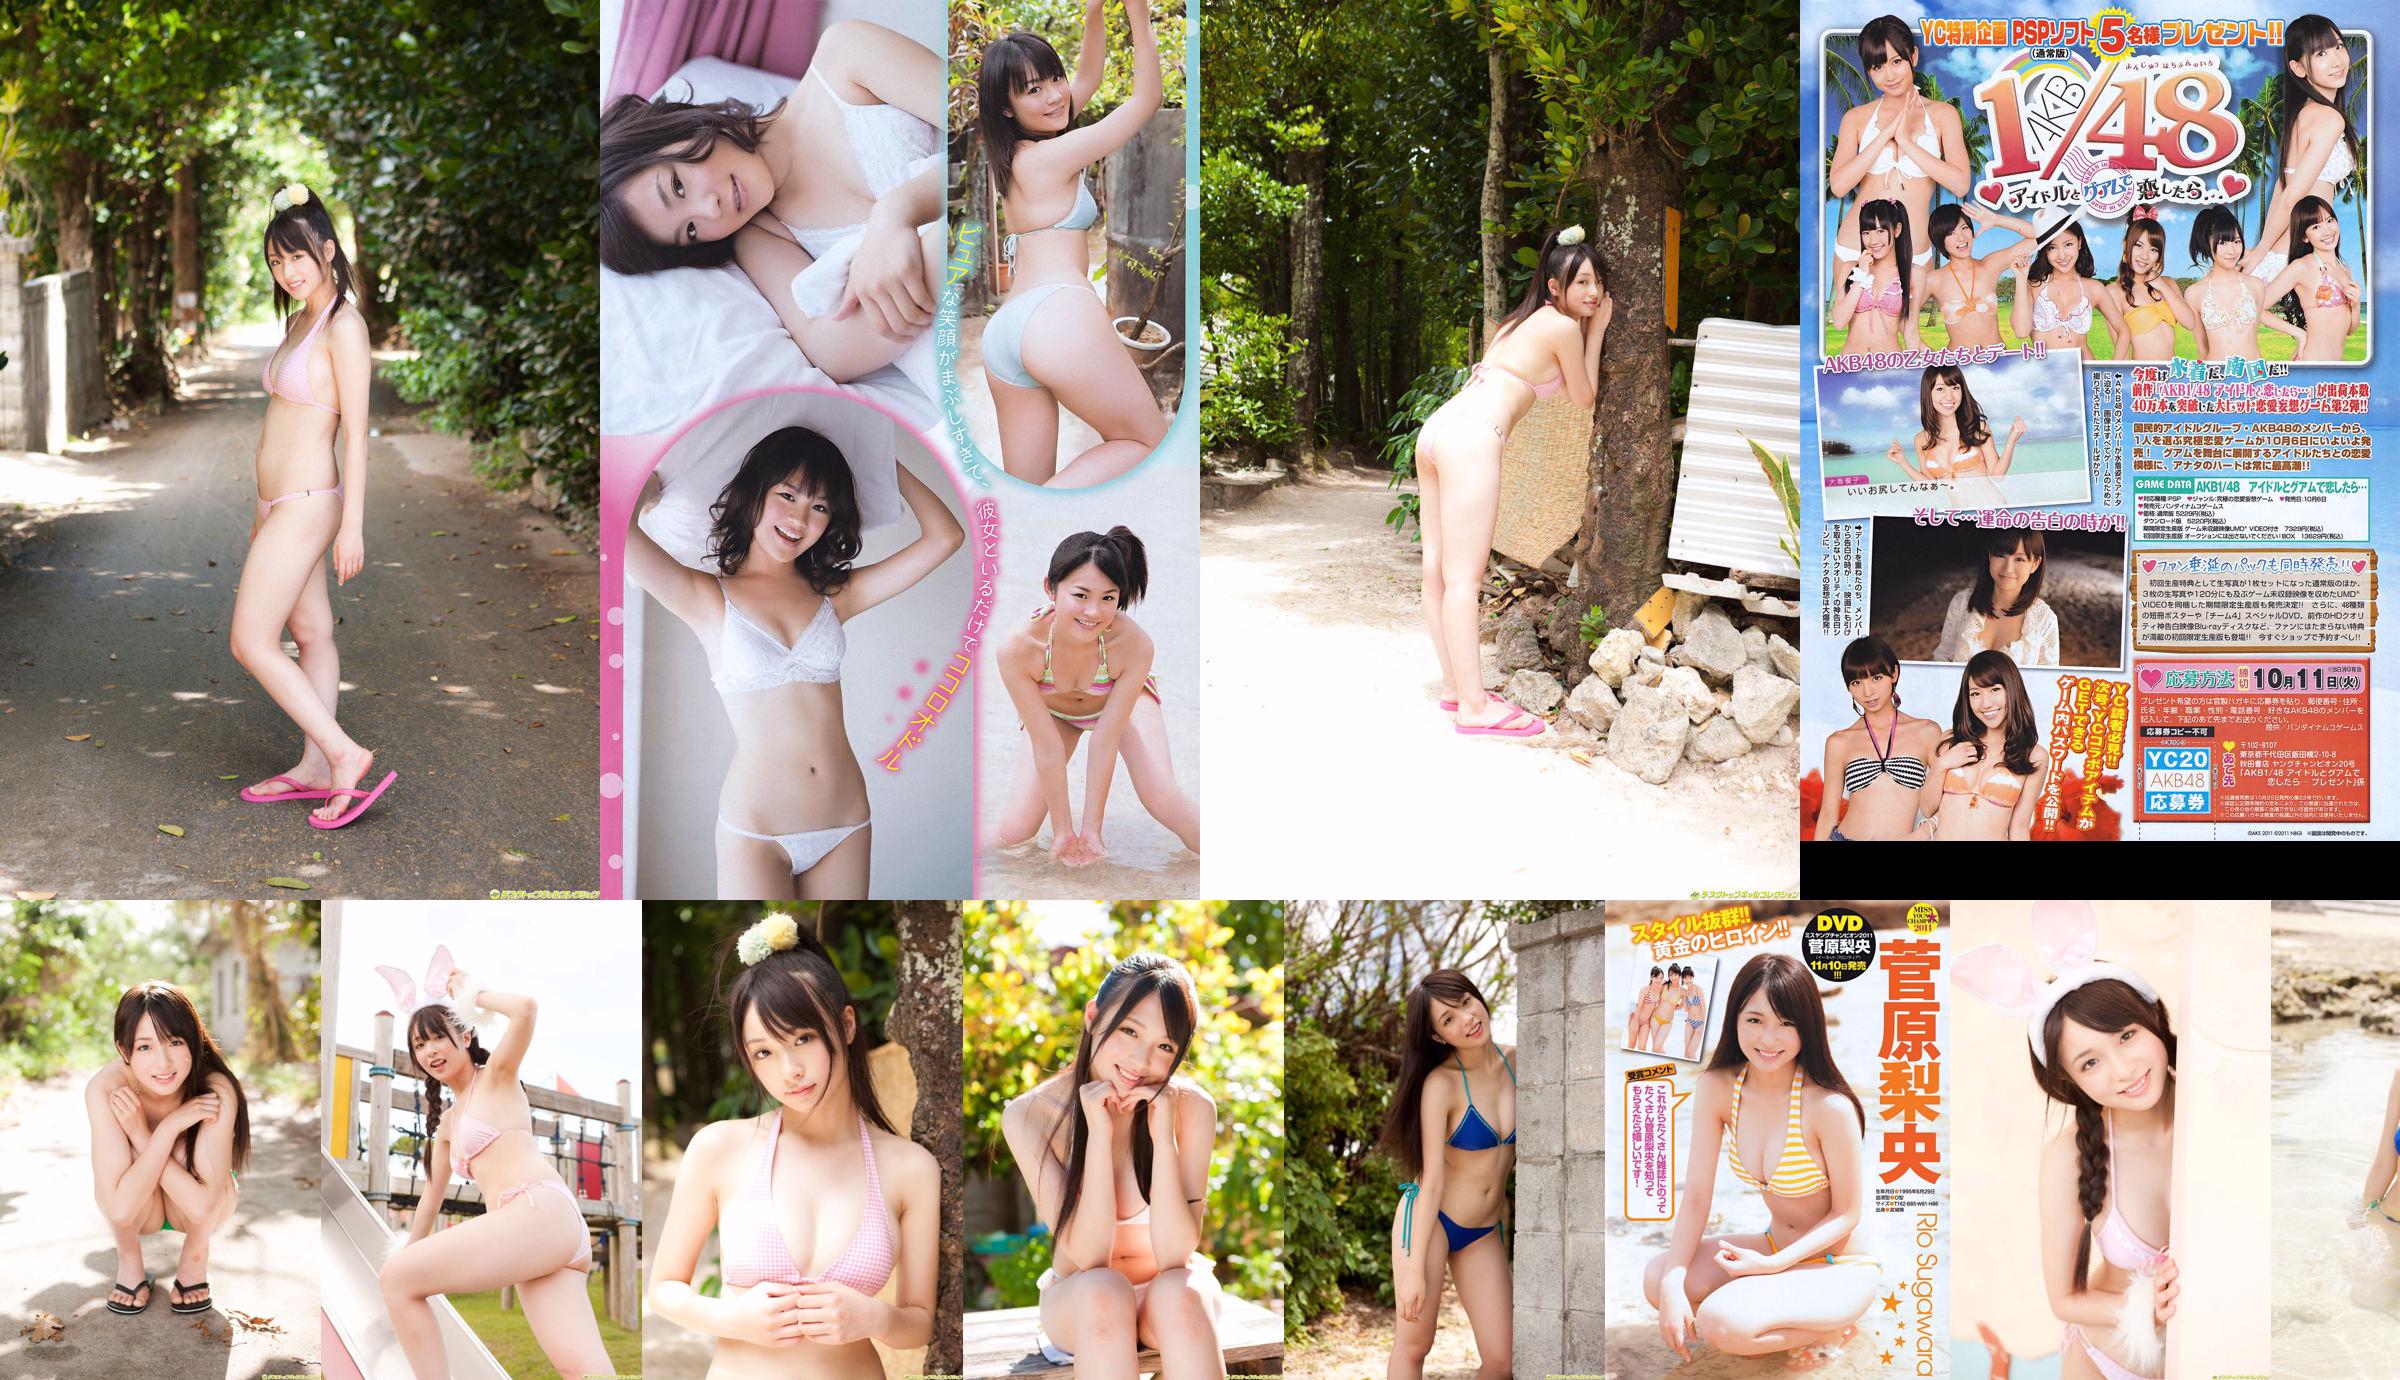 [Juara Muda] Sugawara Risa, Horikawa Mikako, Matsushima no atau Majalah Foto No. 20 2011 No.8ba9be Halaman 4